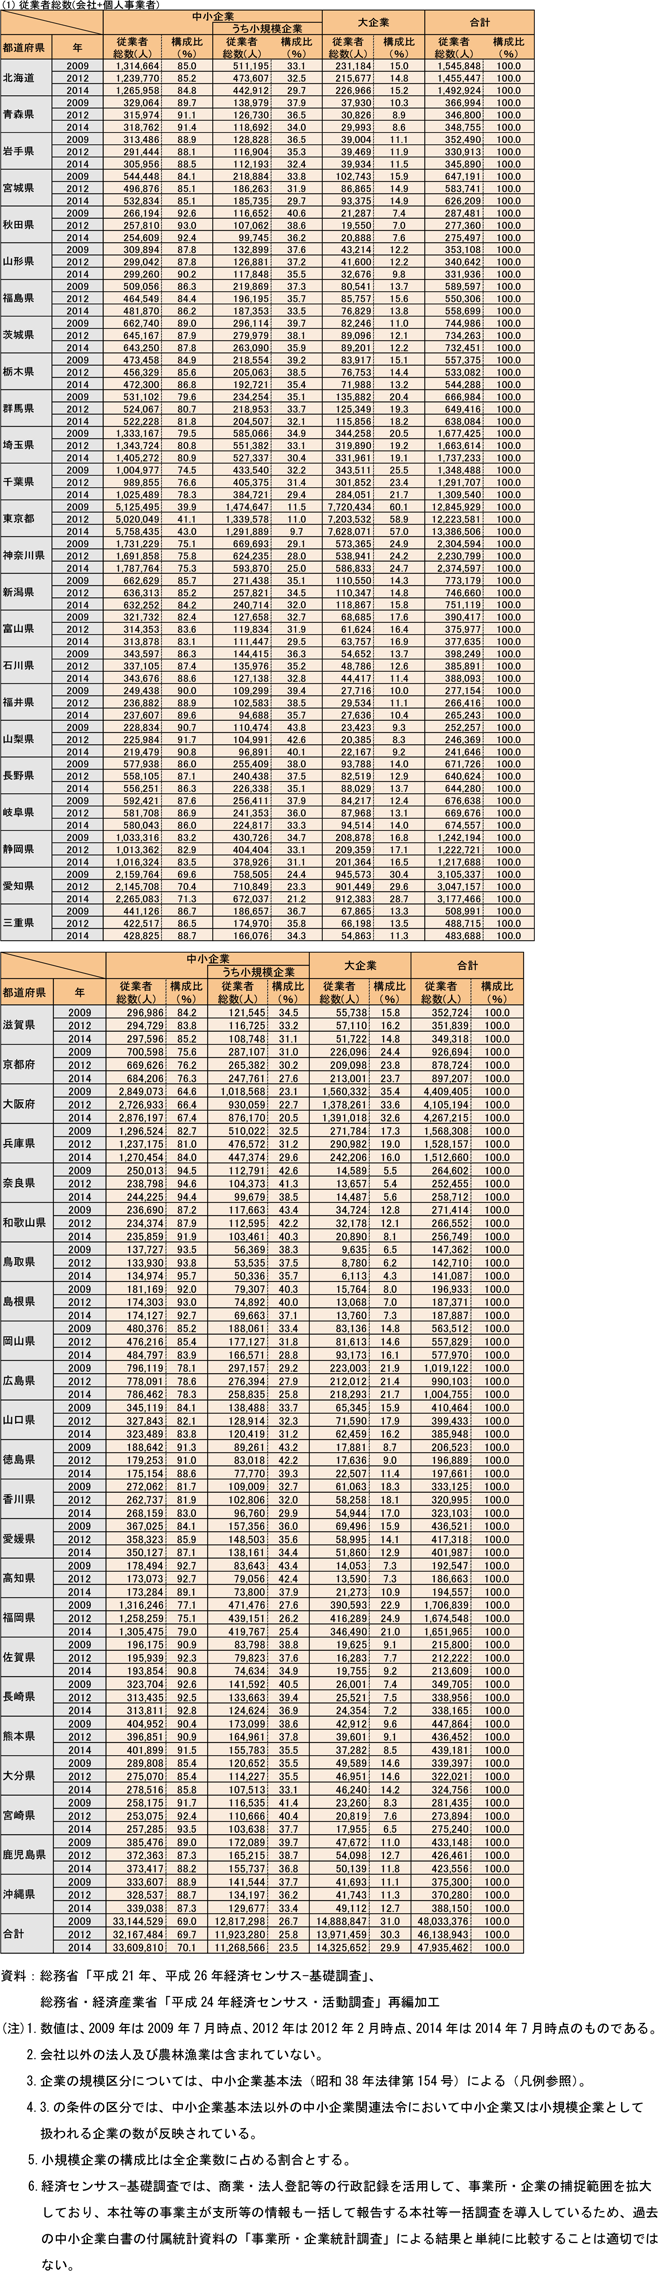 都道府県別規模別従業者総数（民営、非一次産業、2009年、2012年、2014年）